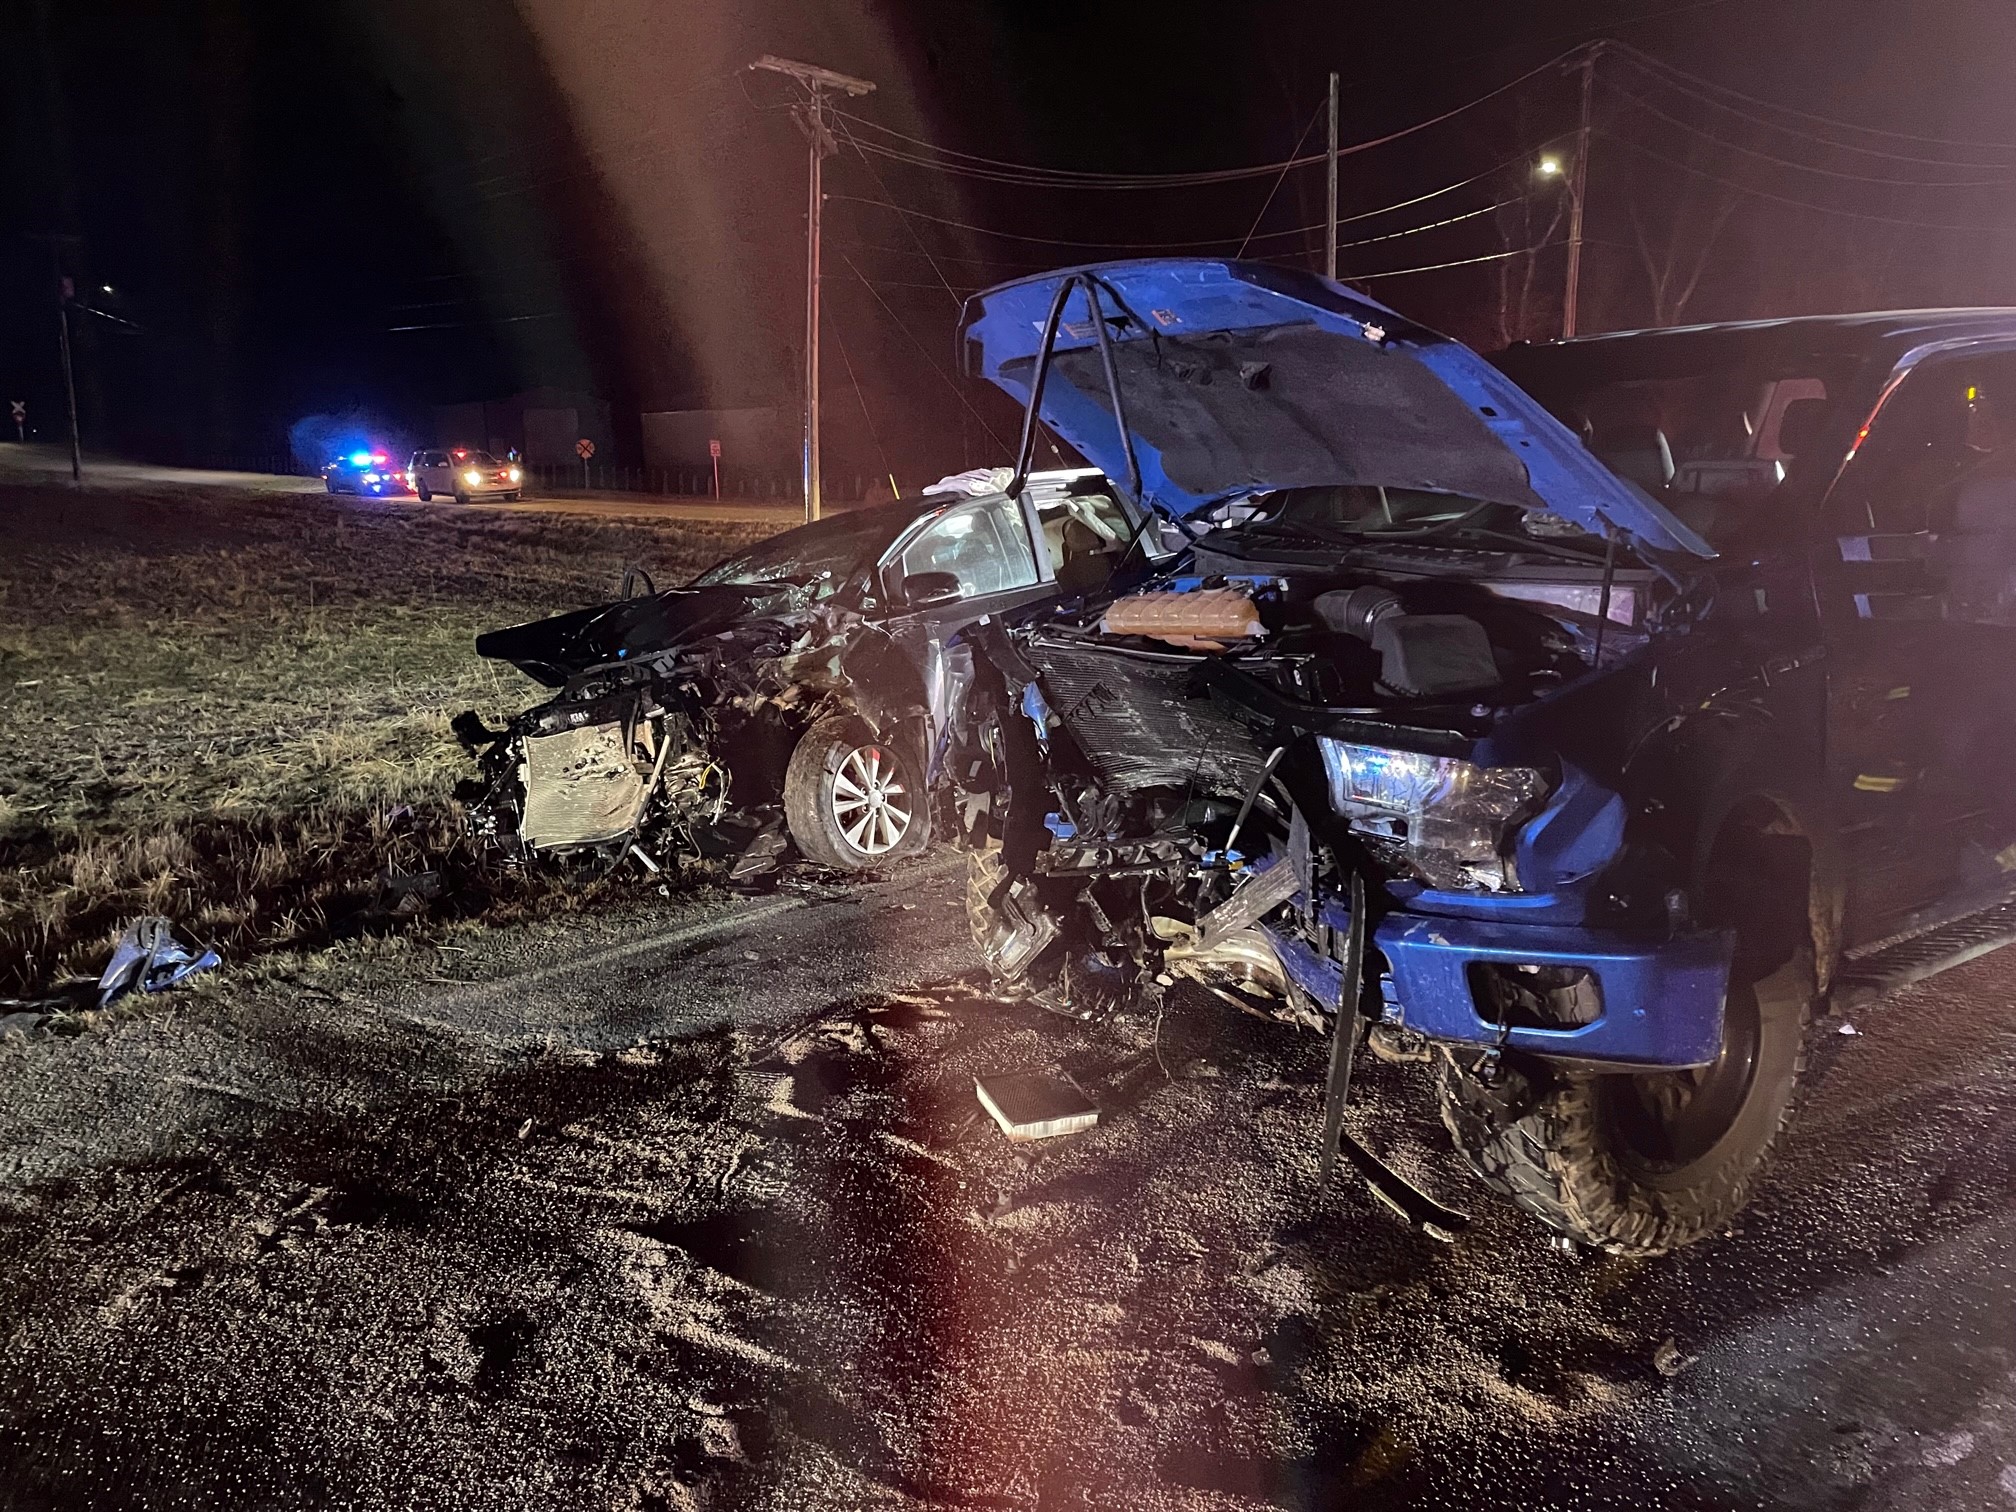 Dan Bongino Car Accident: Facts Unveiled